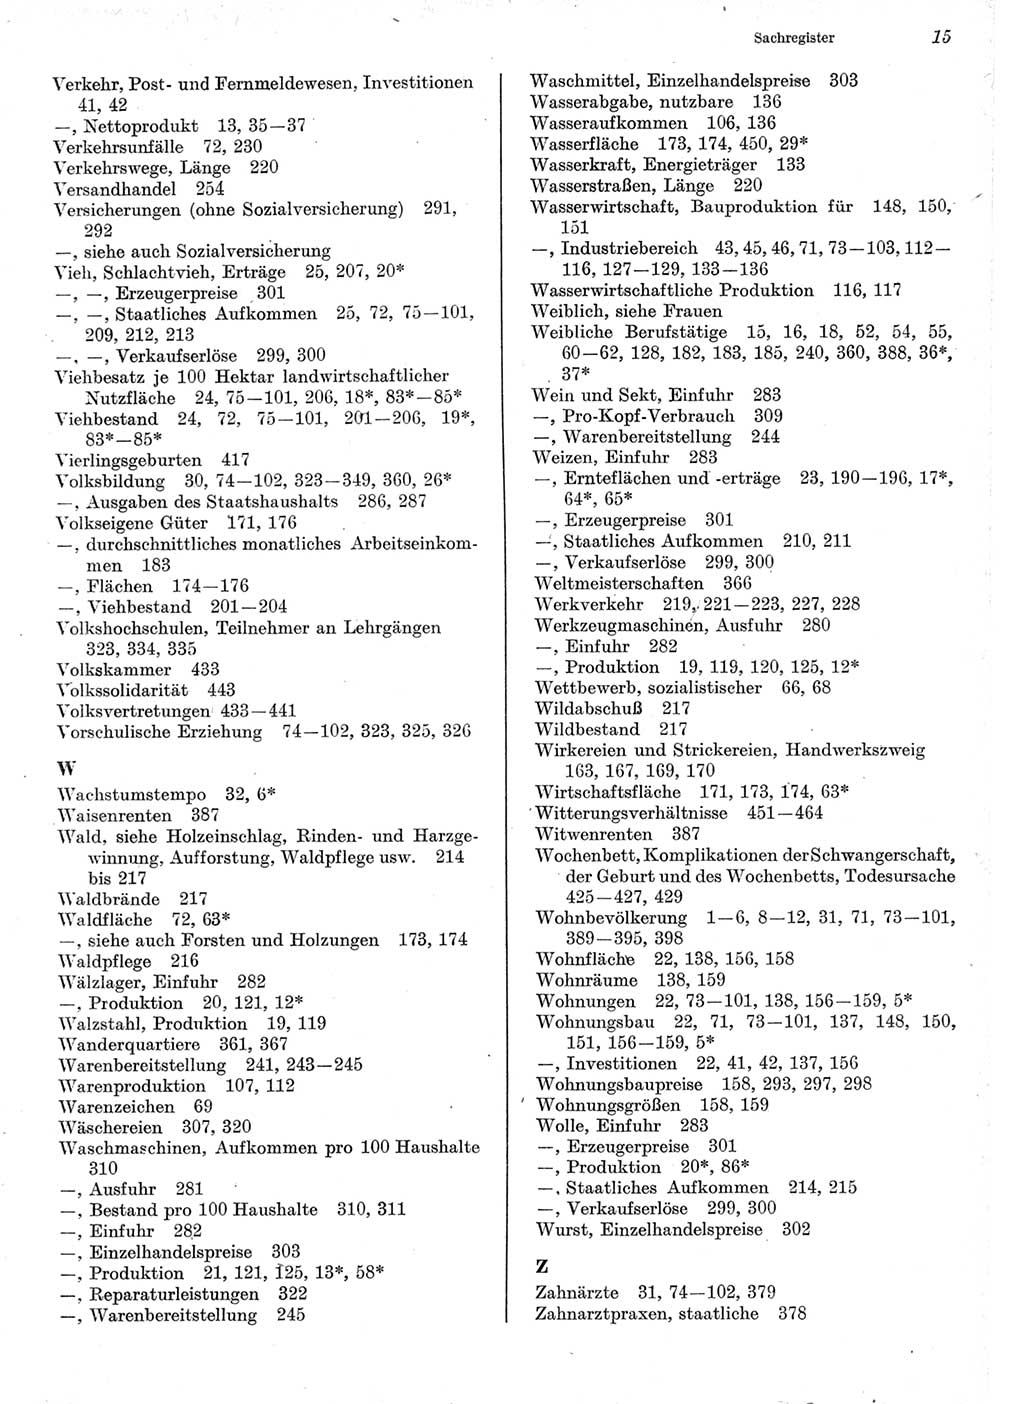 Statistisches Jahrbuch der Deutschen Demokratischen Republik (DDR) 1975, Seite 15 (Stat. Jb. DDR 1975, S. 15)